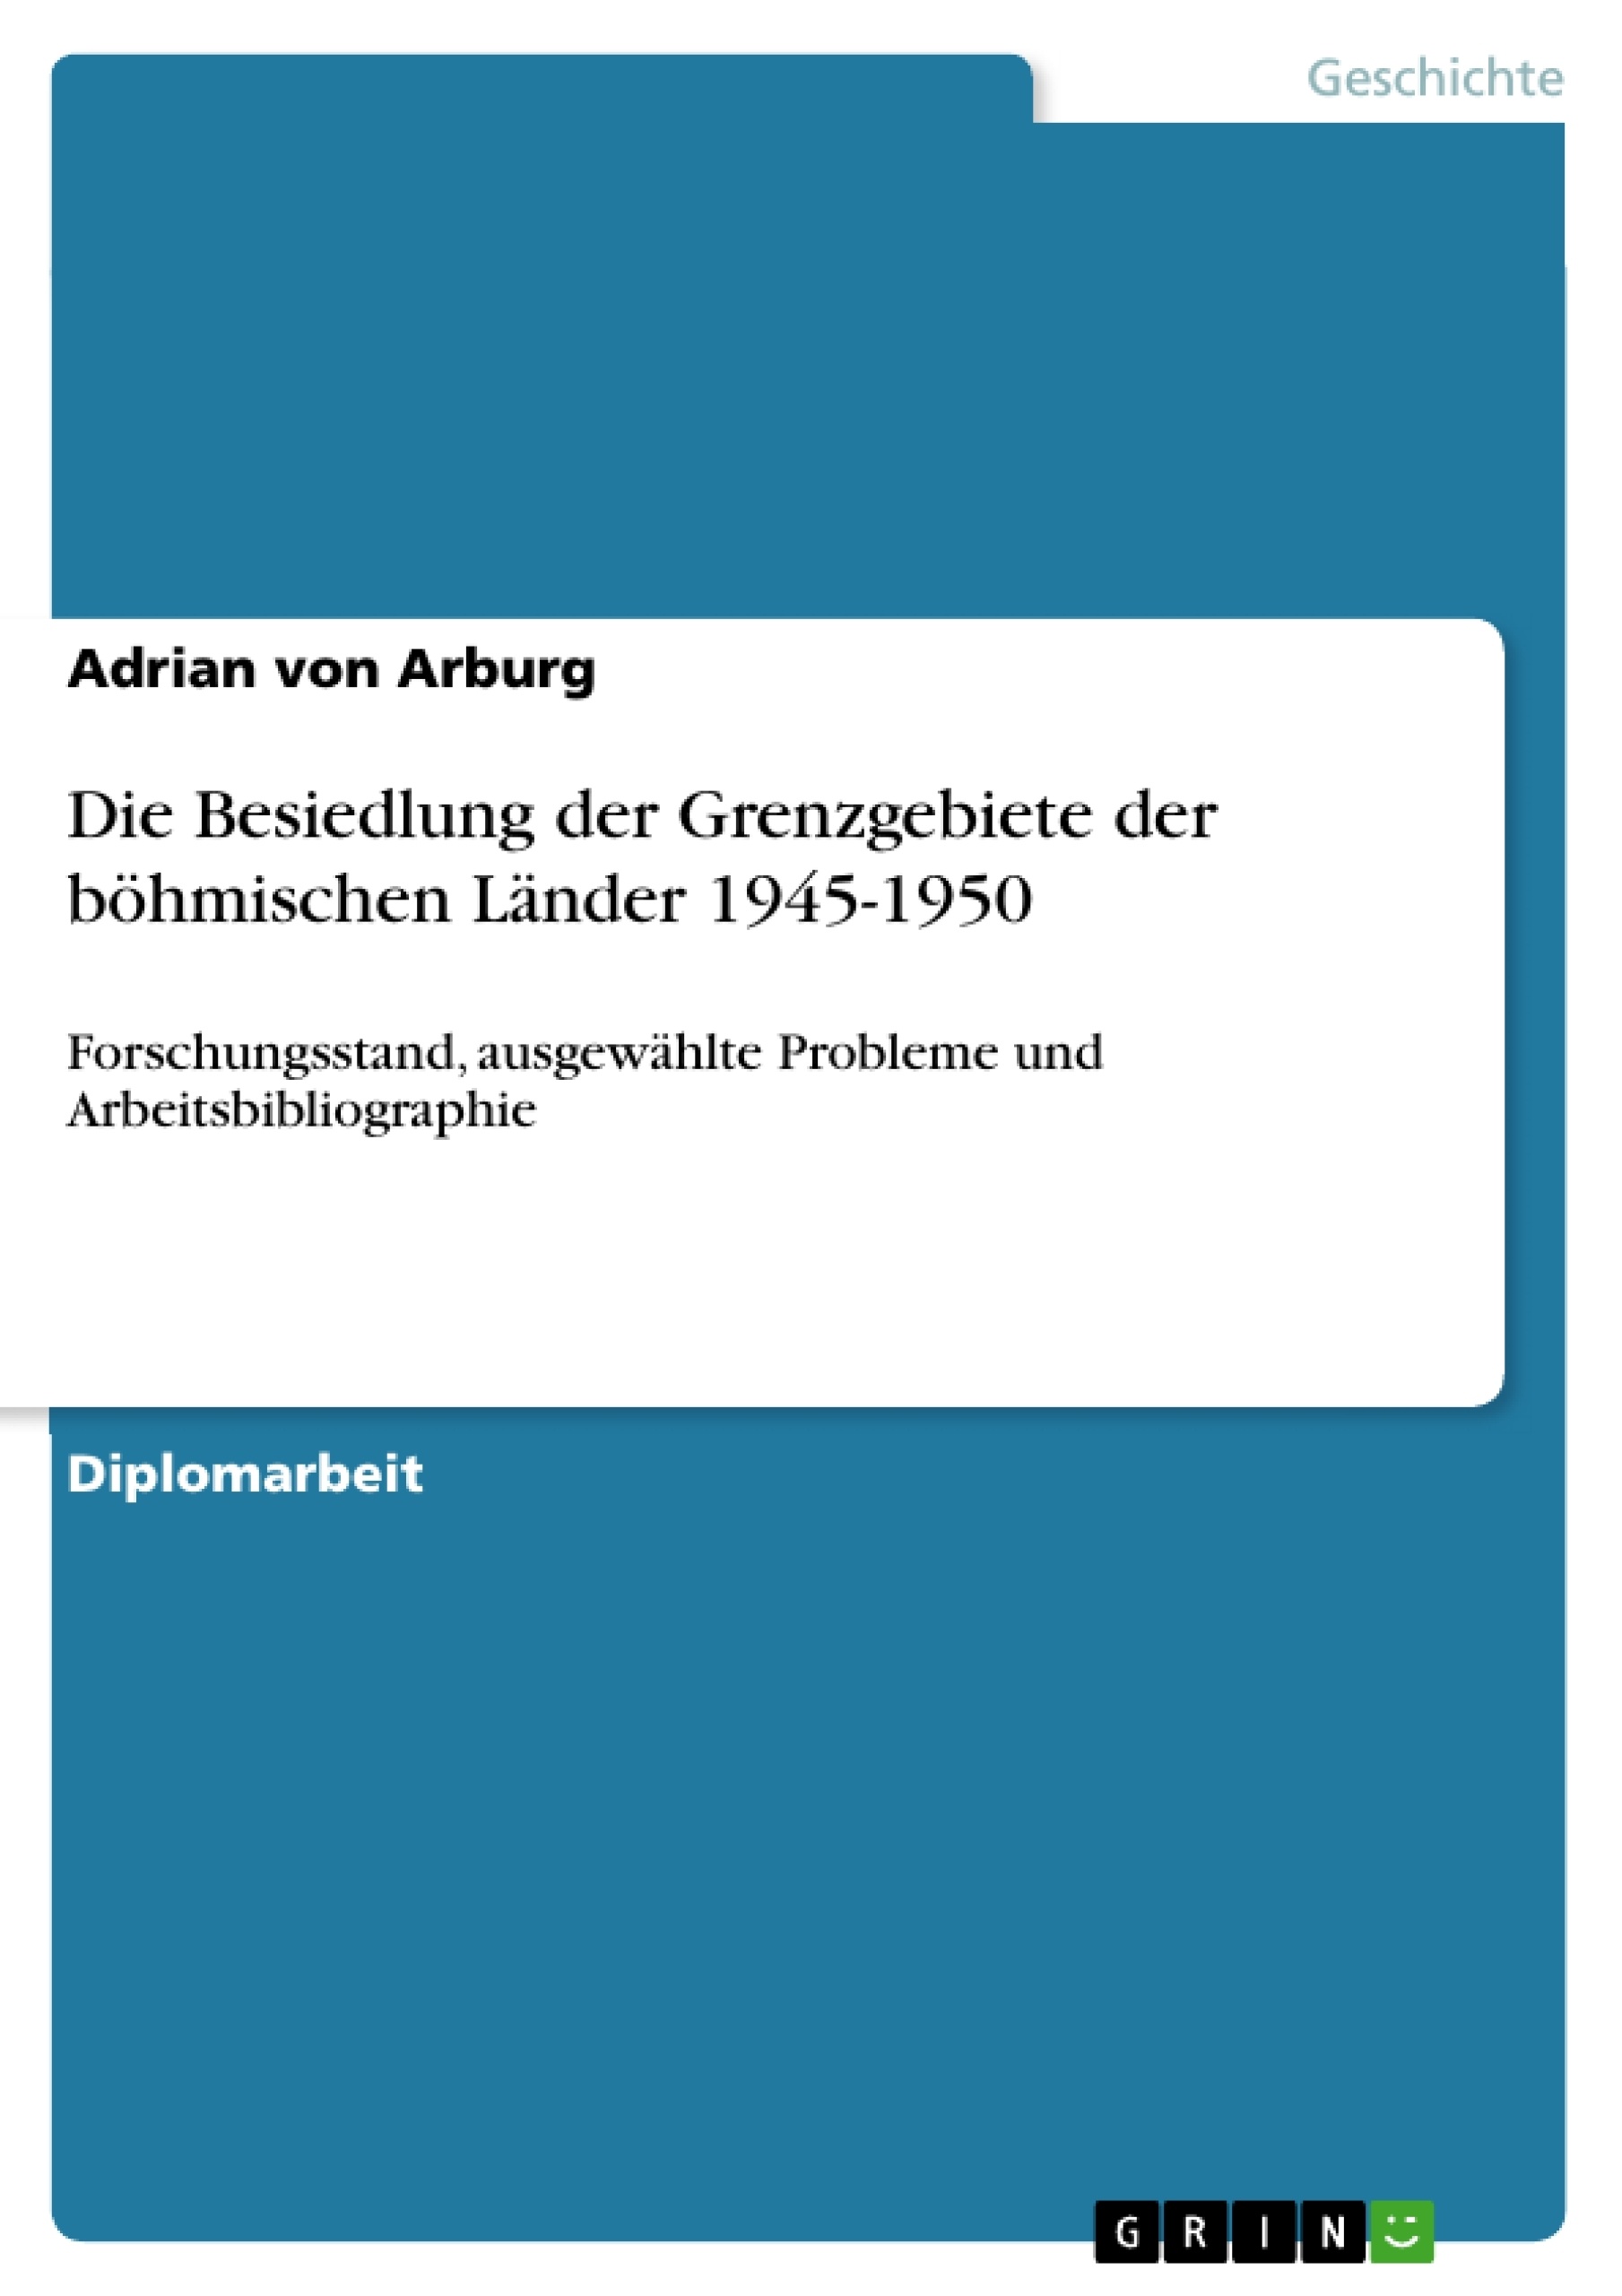 Title: Die Besiedlung der Grenzgebiete der böhmischen Länder 1945-1950 